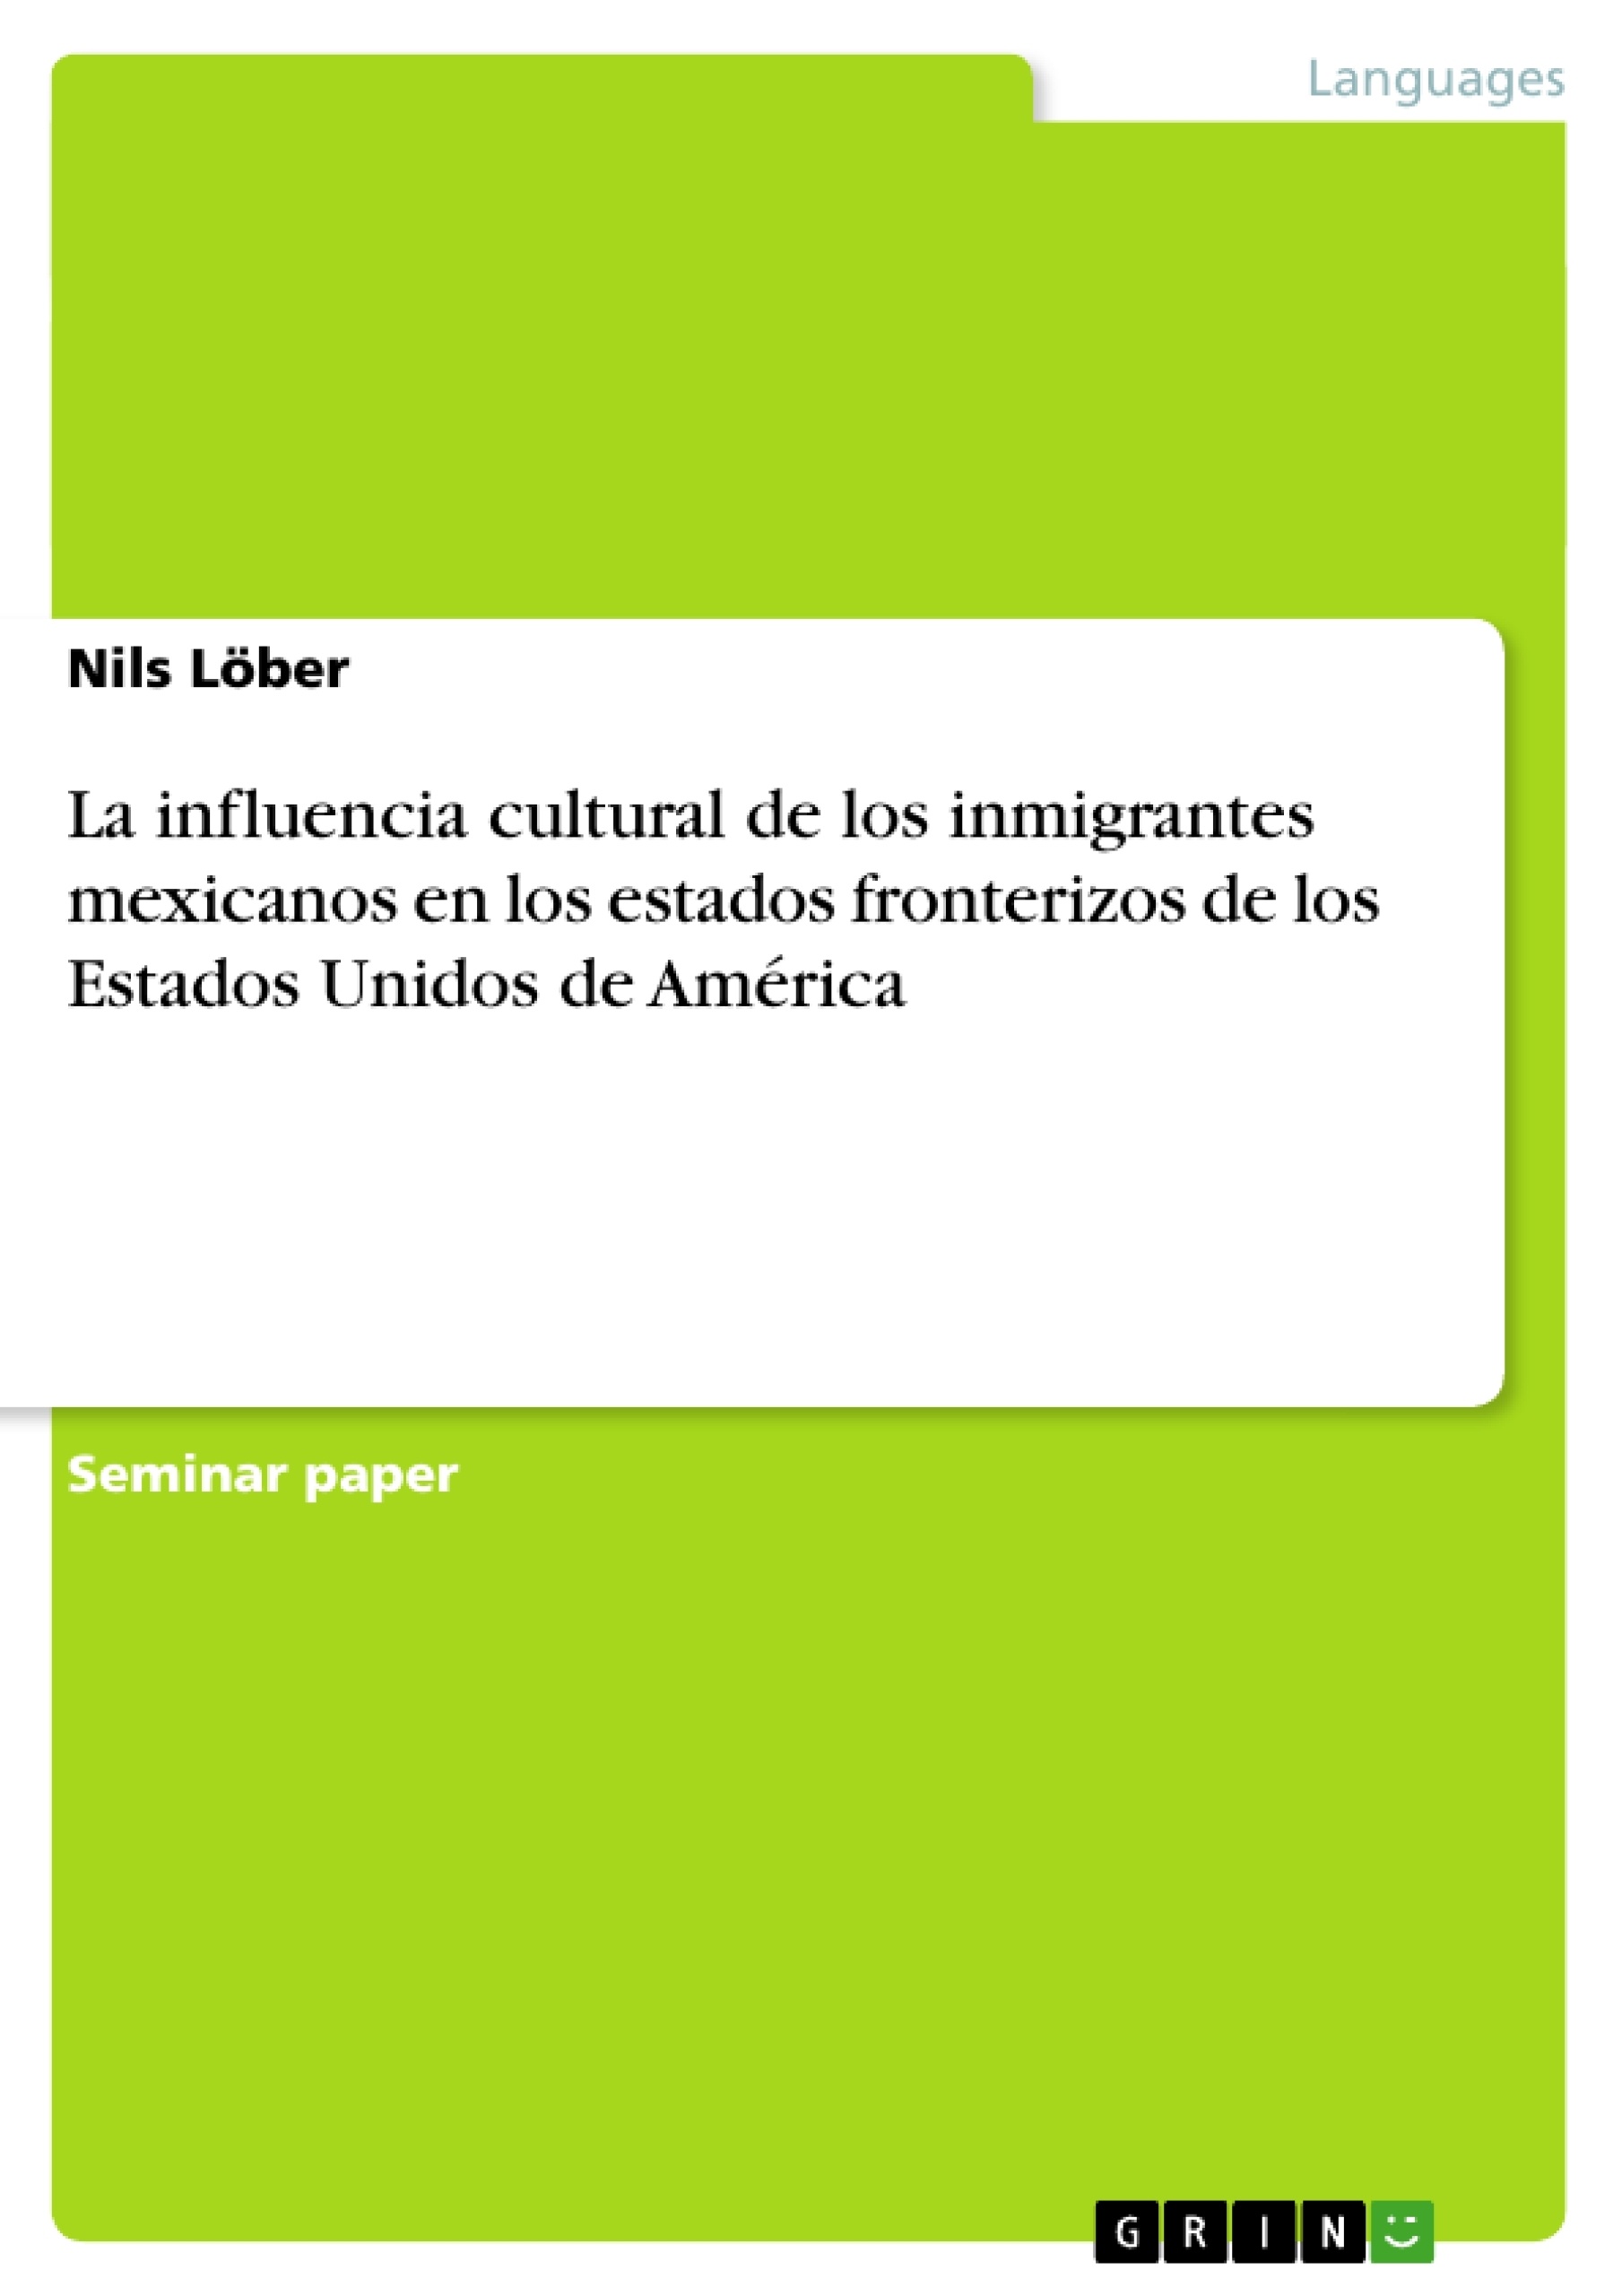 Título: La influencia cultural de los inmigrantes mexicanos en los estados fronterizos de los Estados Unidos de América